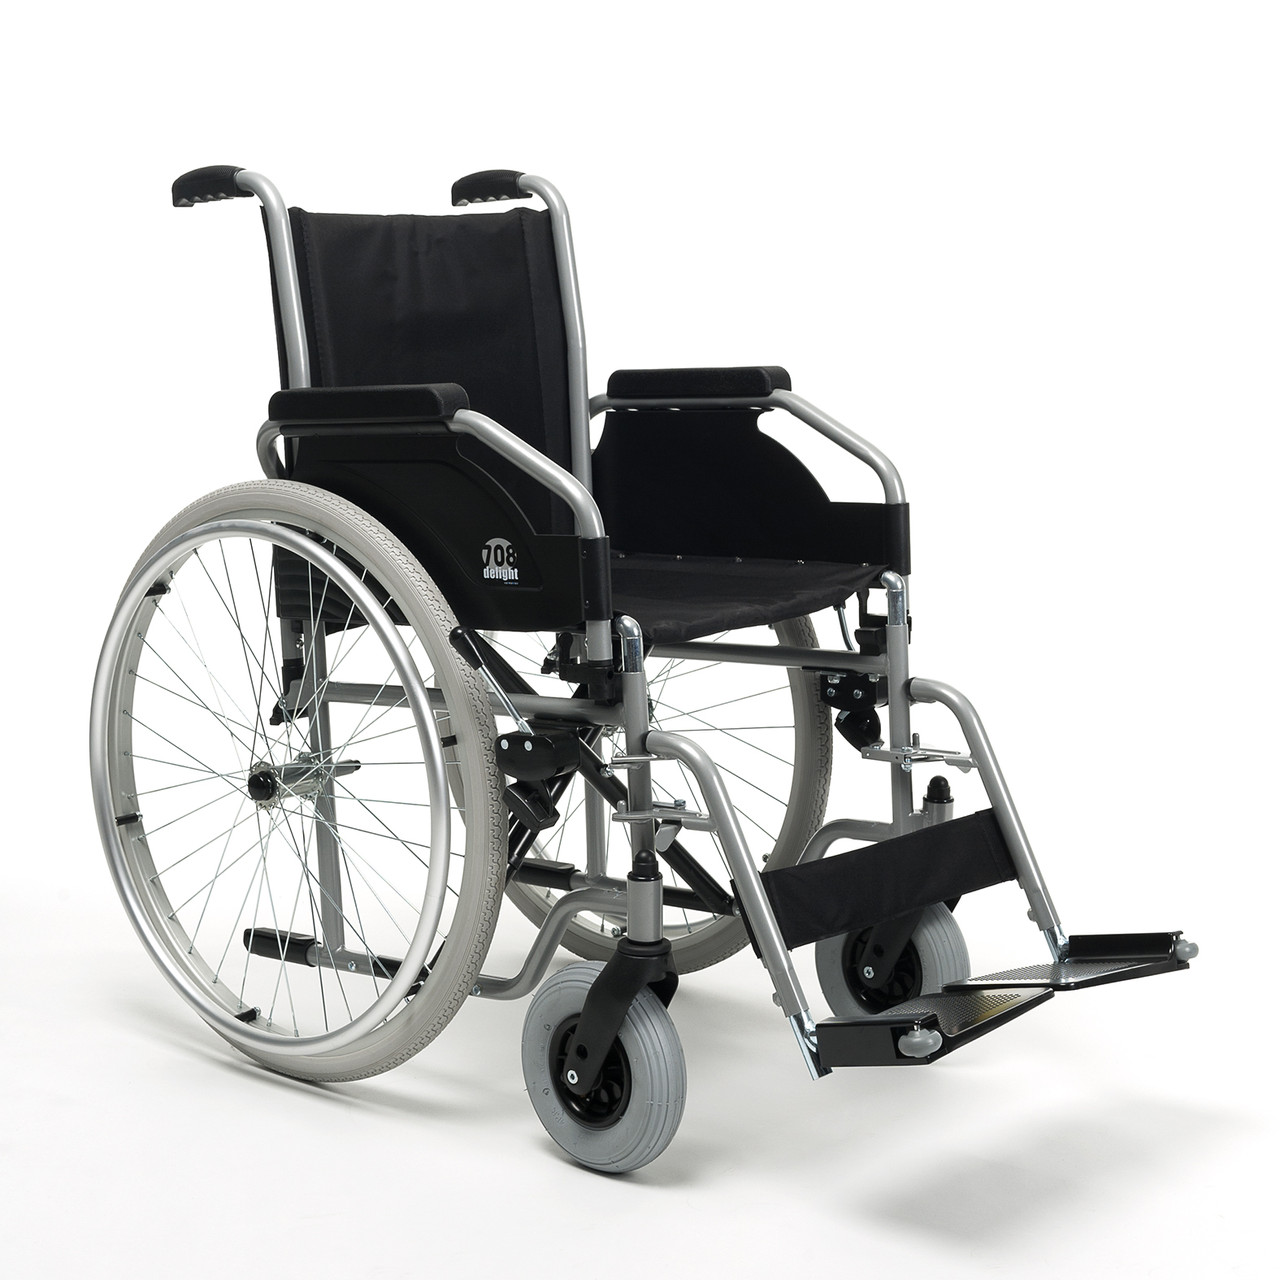 Инвалидная коляска для взрослых 708D Vermeiren (Сидение 44 см., литые колеса)